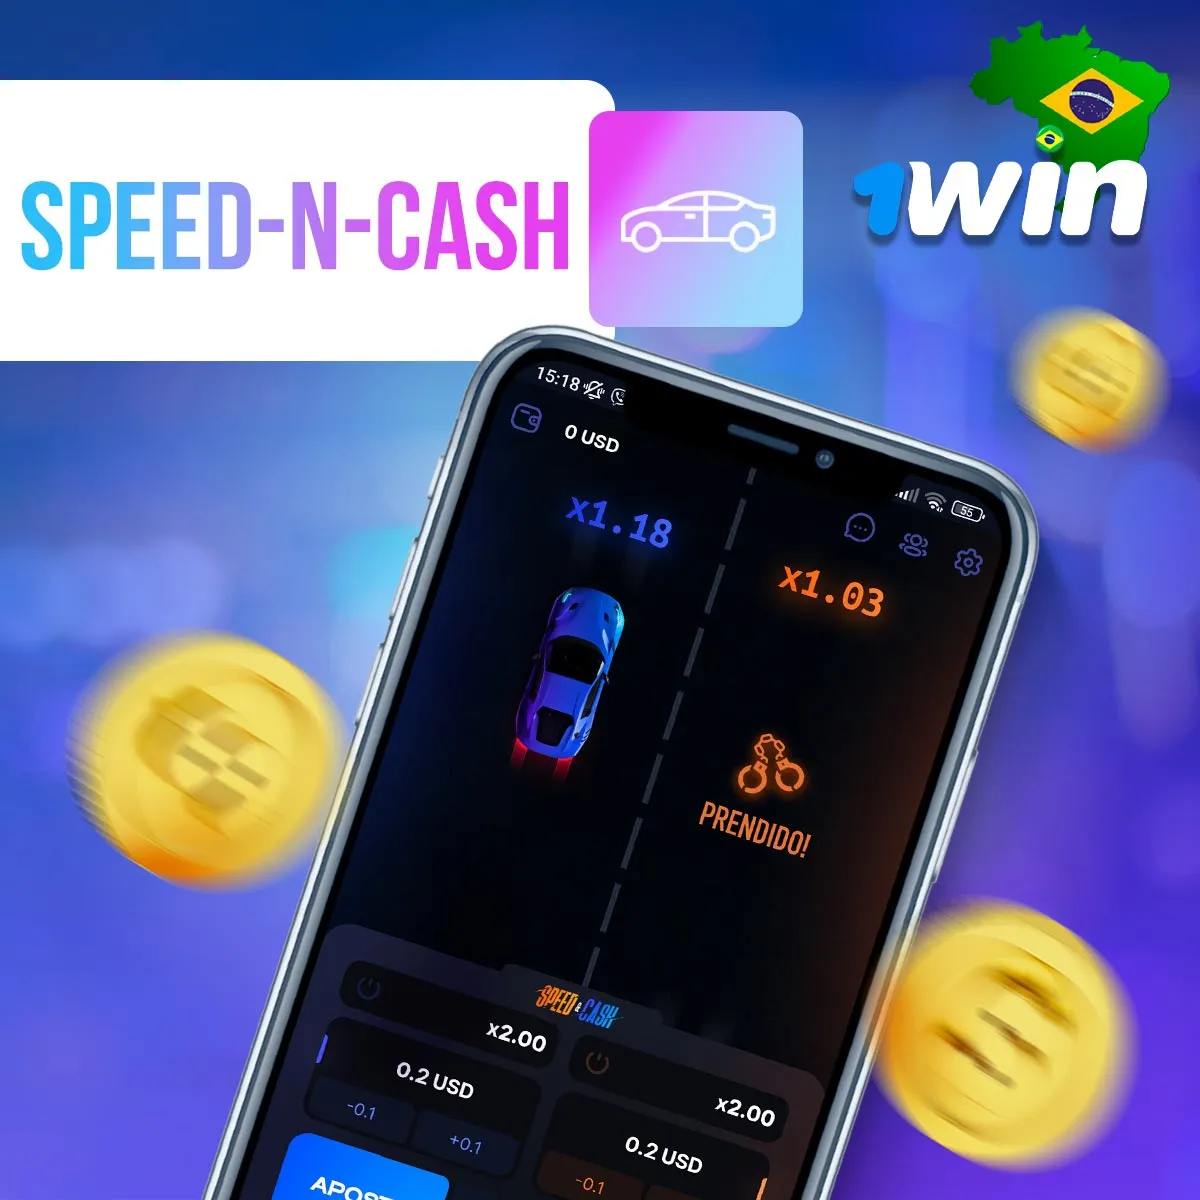 O popular jogo Speed-n-Cash no Cassino 1win no Brasil